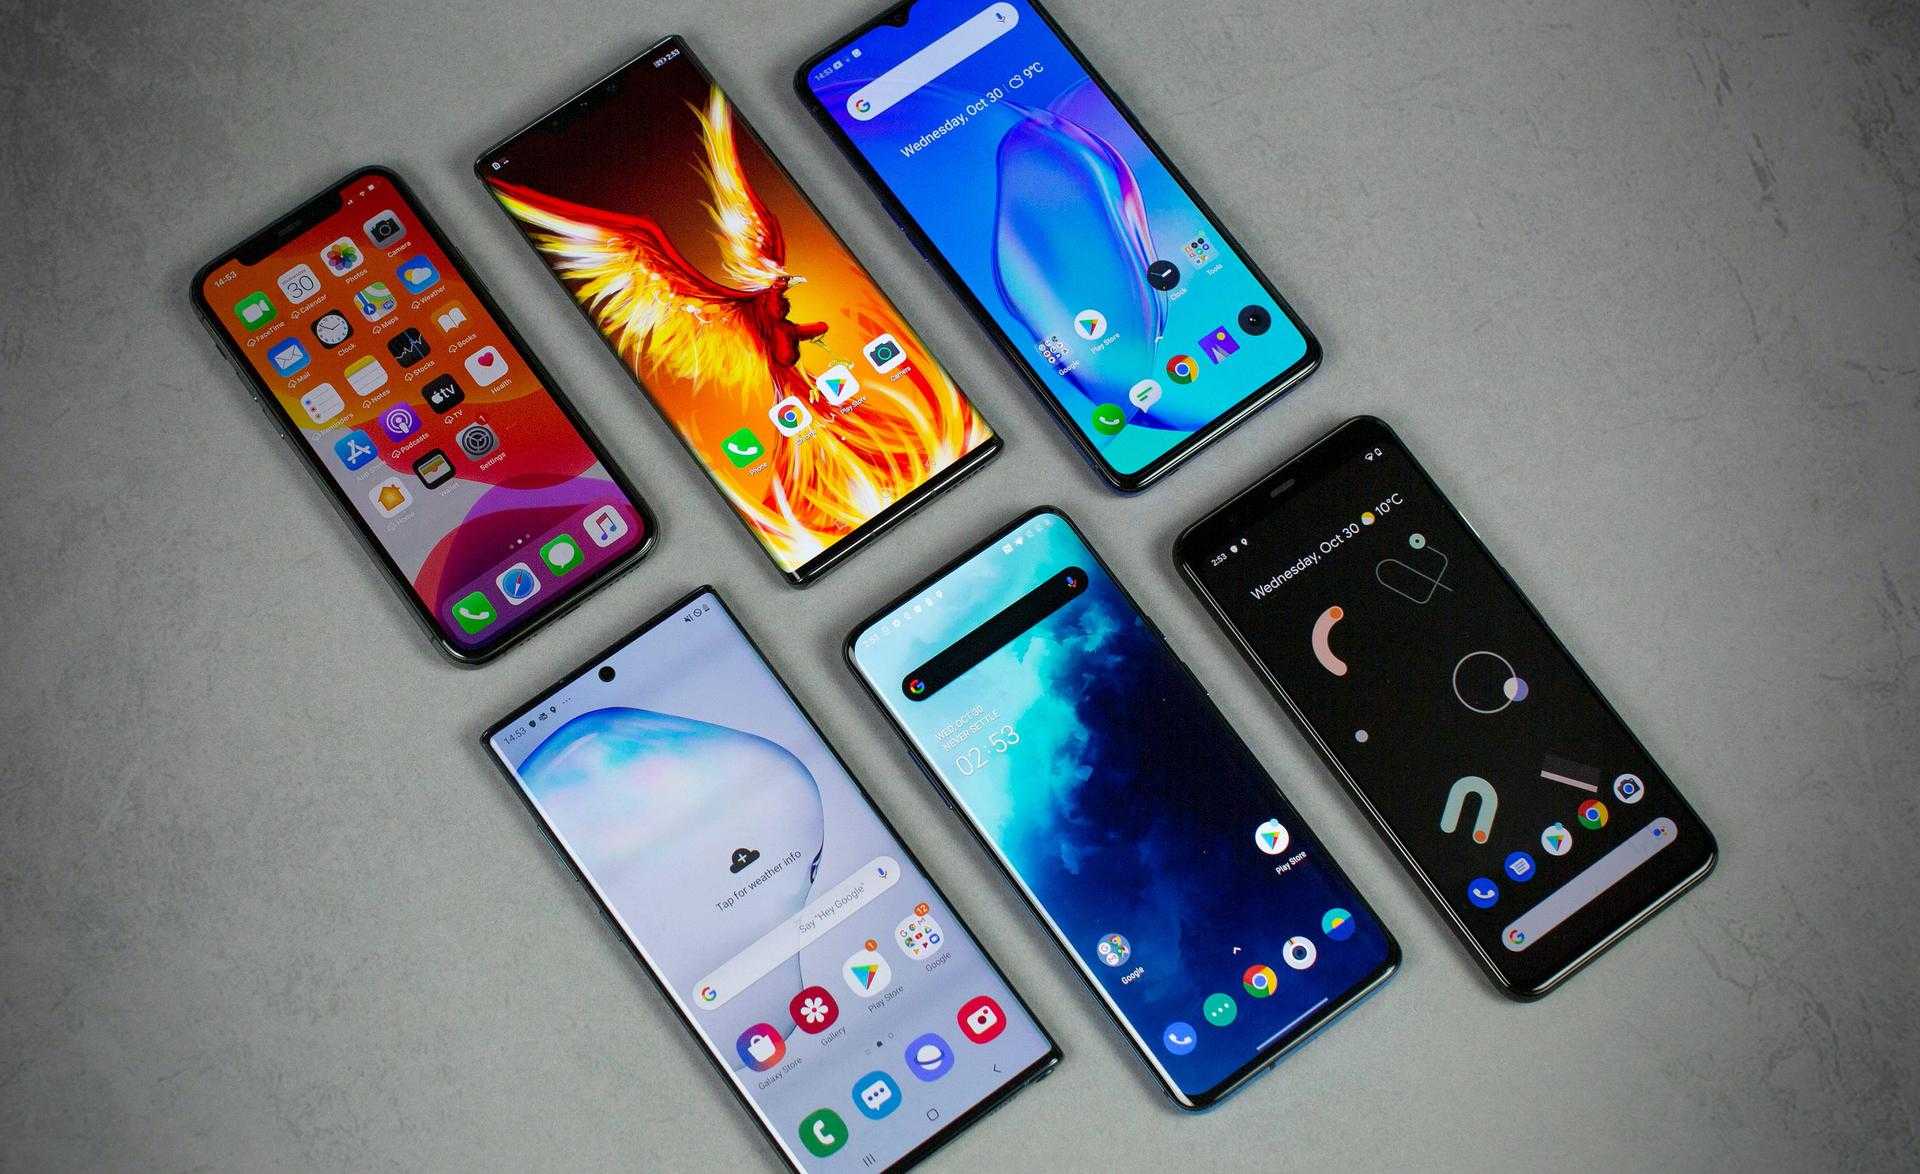 Топ 10 лучших смартфонов до 15000 рублей - рейтинг 2021 -2022 года | экспертные руководства по выбору техники